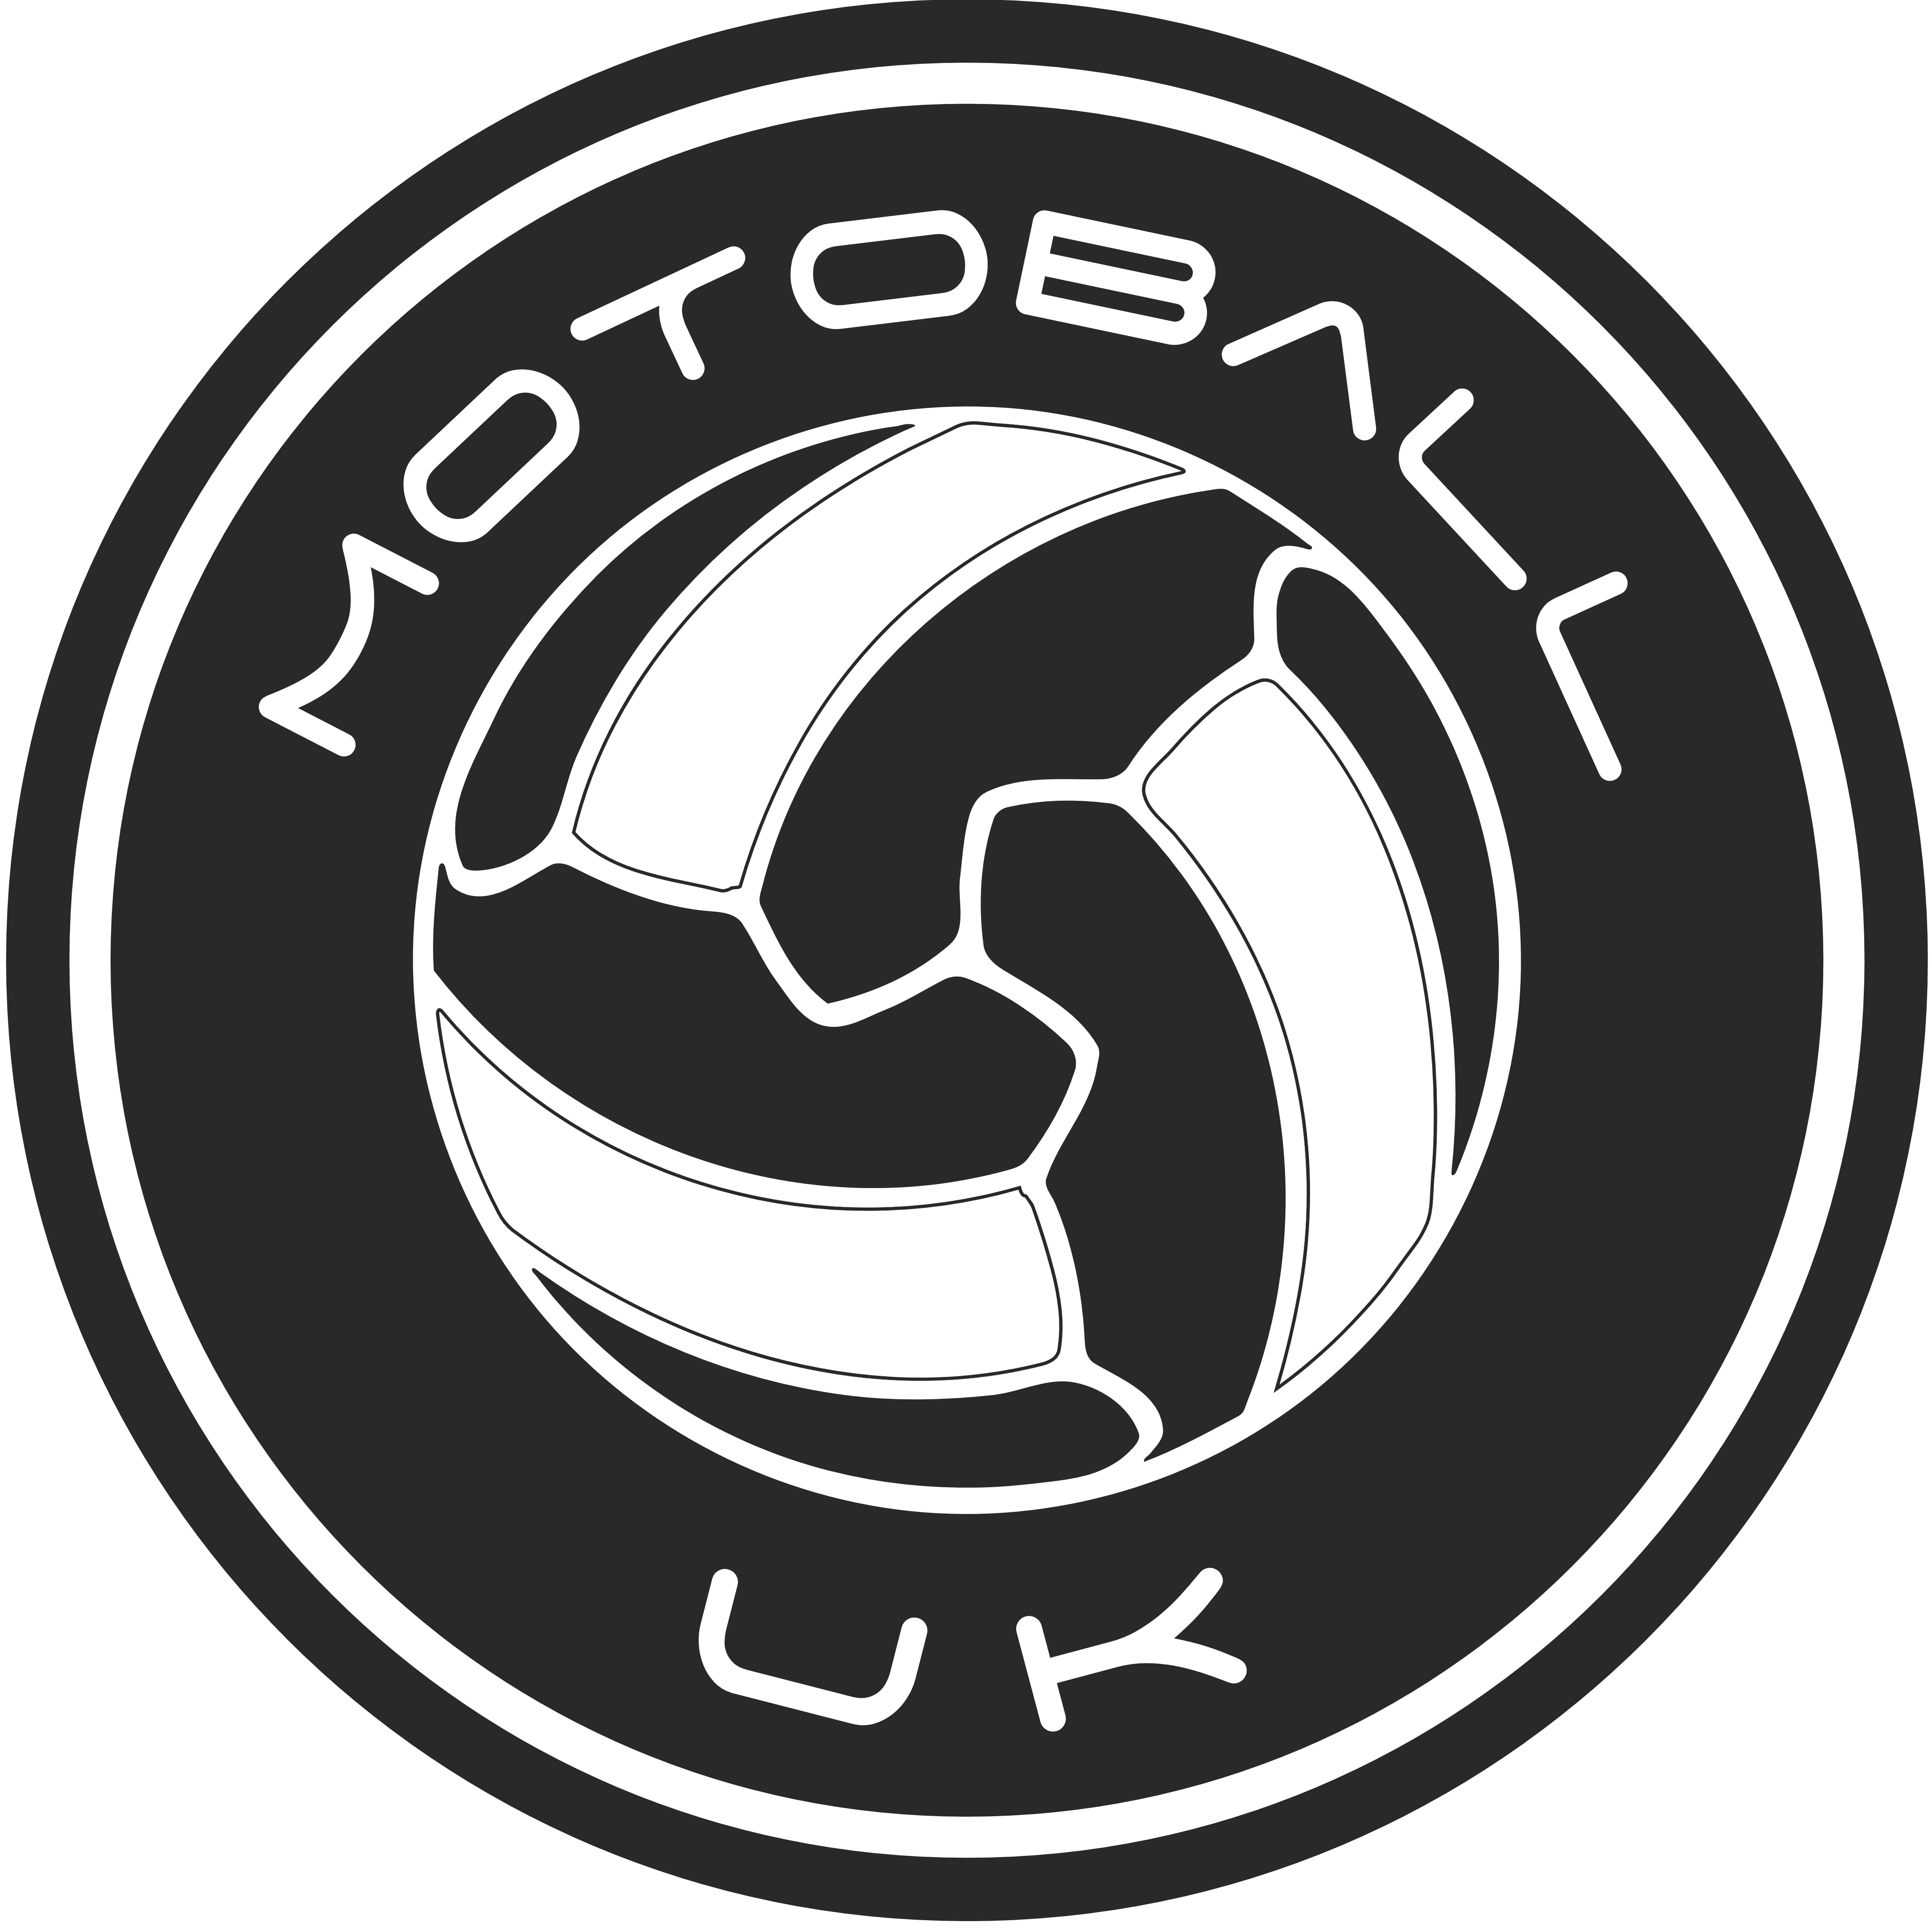 Motoball UK